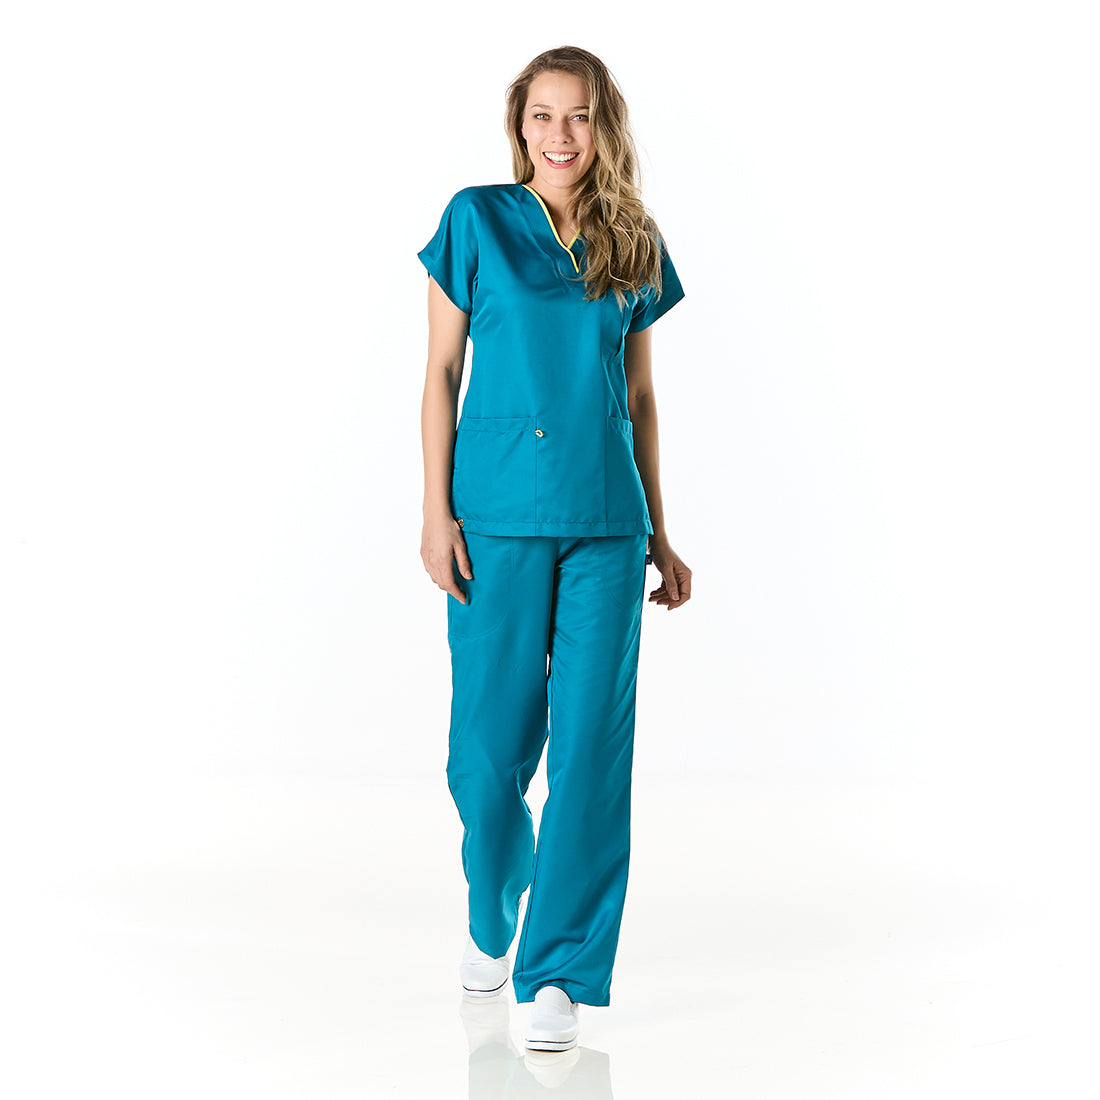 Mujer vistiendo pijama sanitario azul con escote en v y pantalon recto